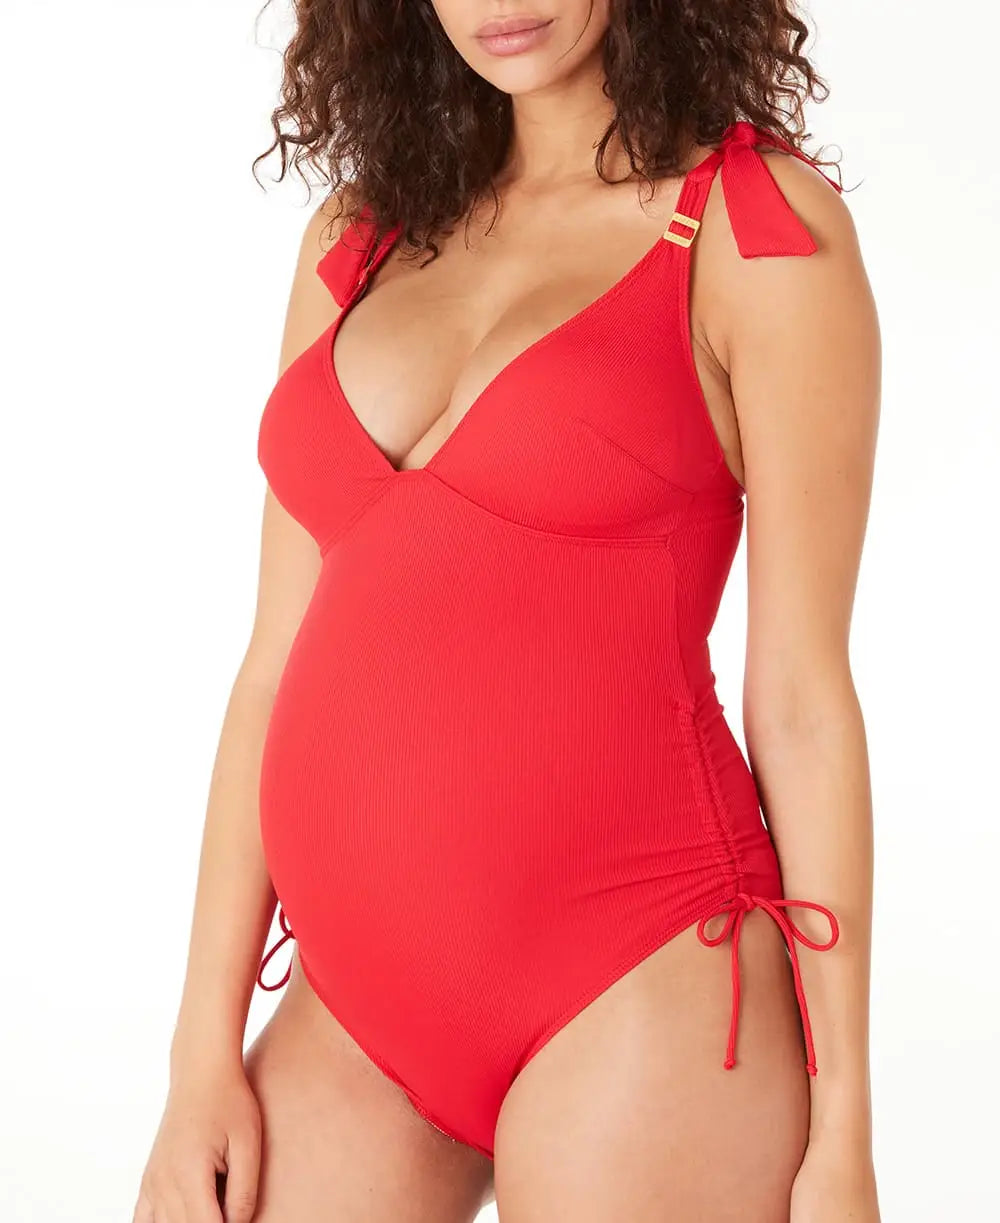 Maternity swimsuit Porto Vecchio red